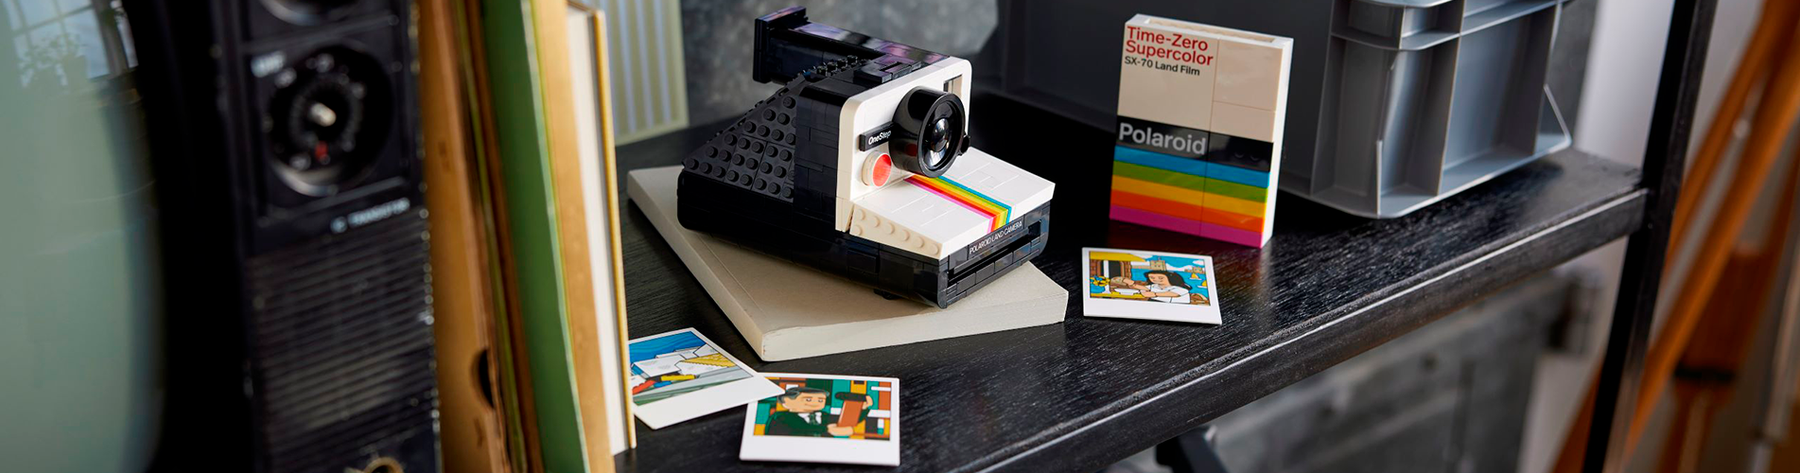 Luz, Cámara, LEGO®! Descubre la Cámara Polaroid OneStep SX-70 de LEGO® IDEAS, joya para fotógrafos y constructores